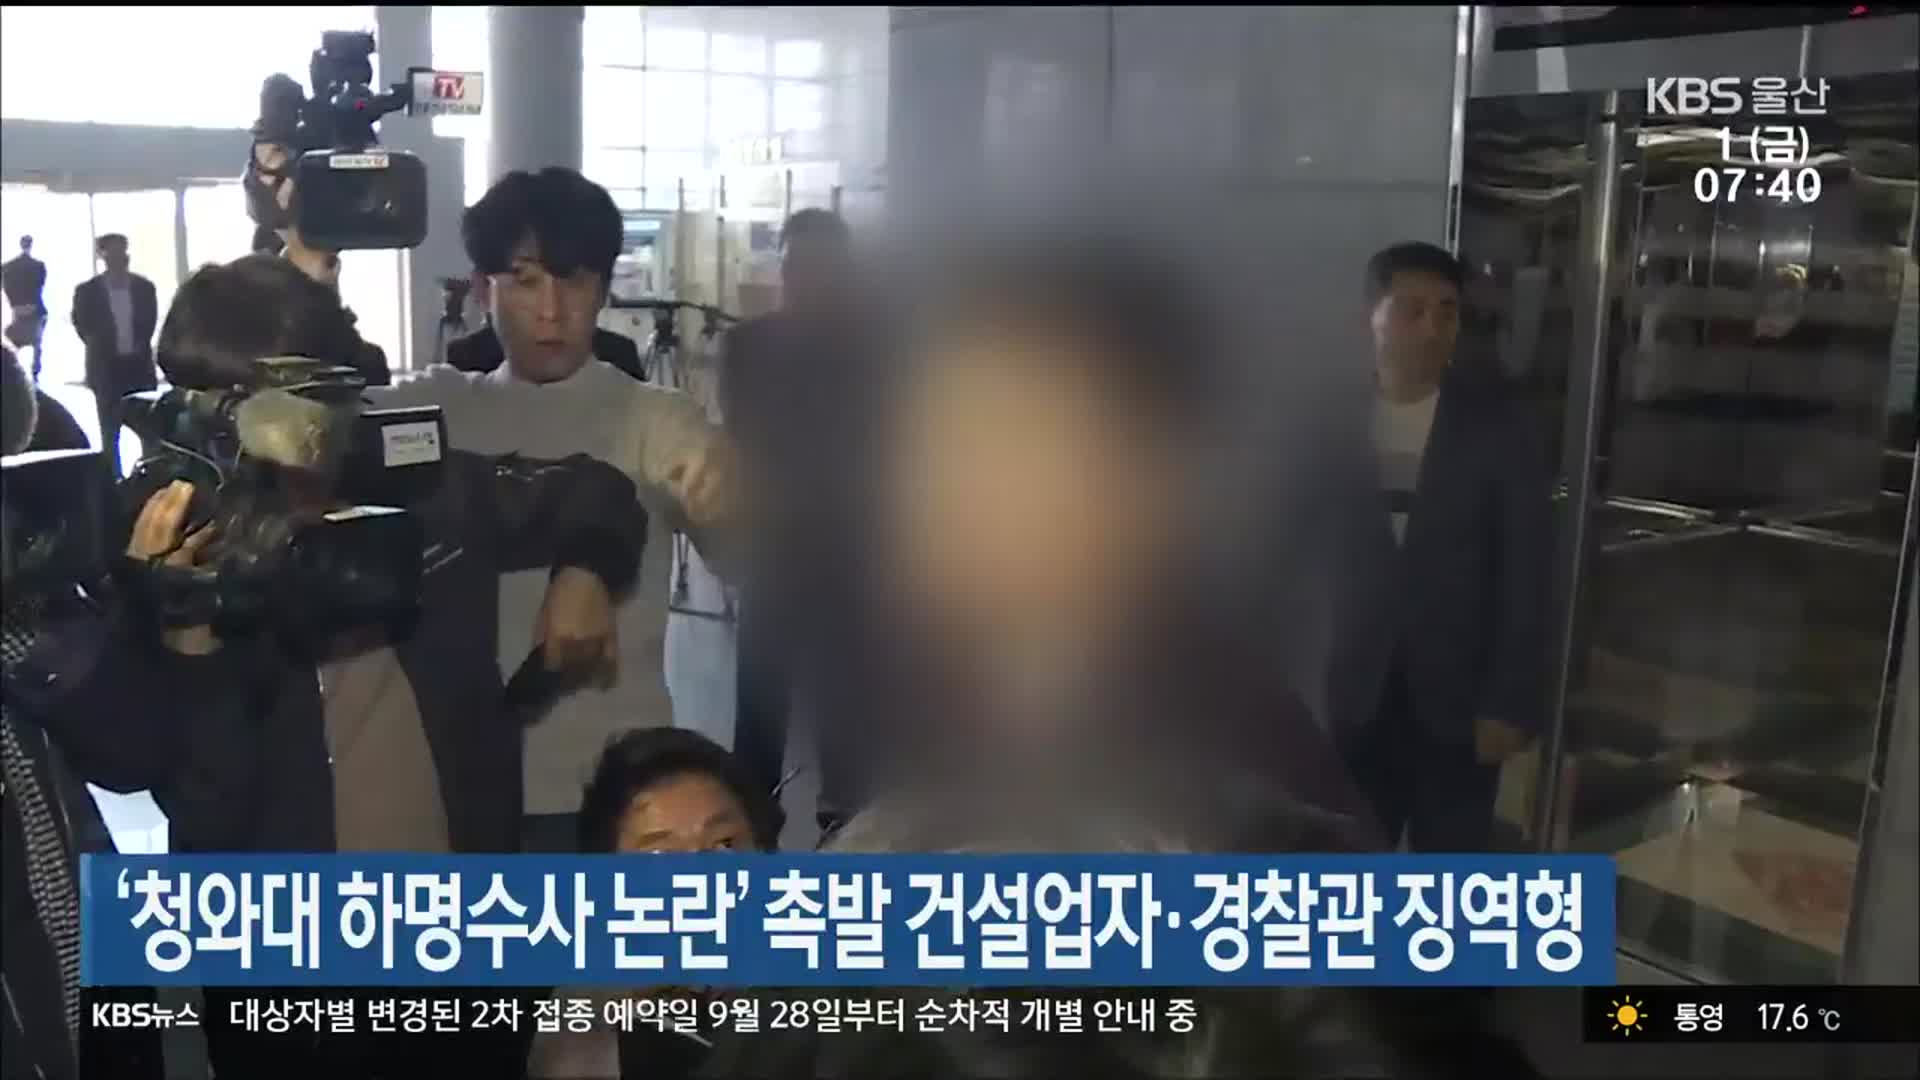 ‘청와대 하명수사 논란’ 촉발 건설업자·경찰관 징역형